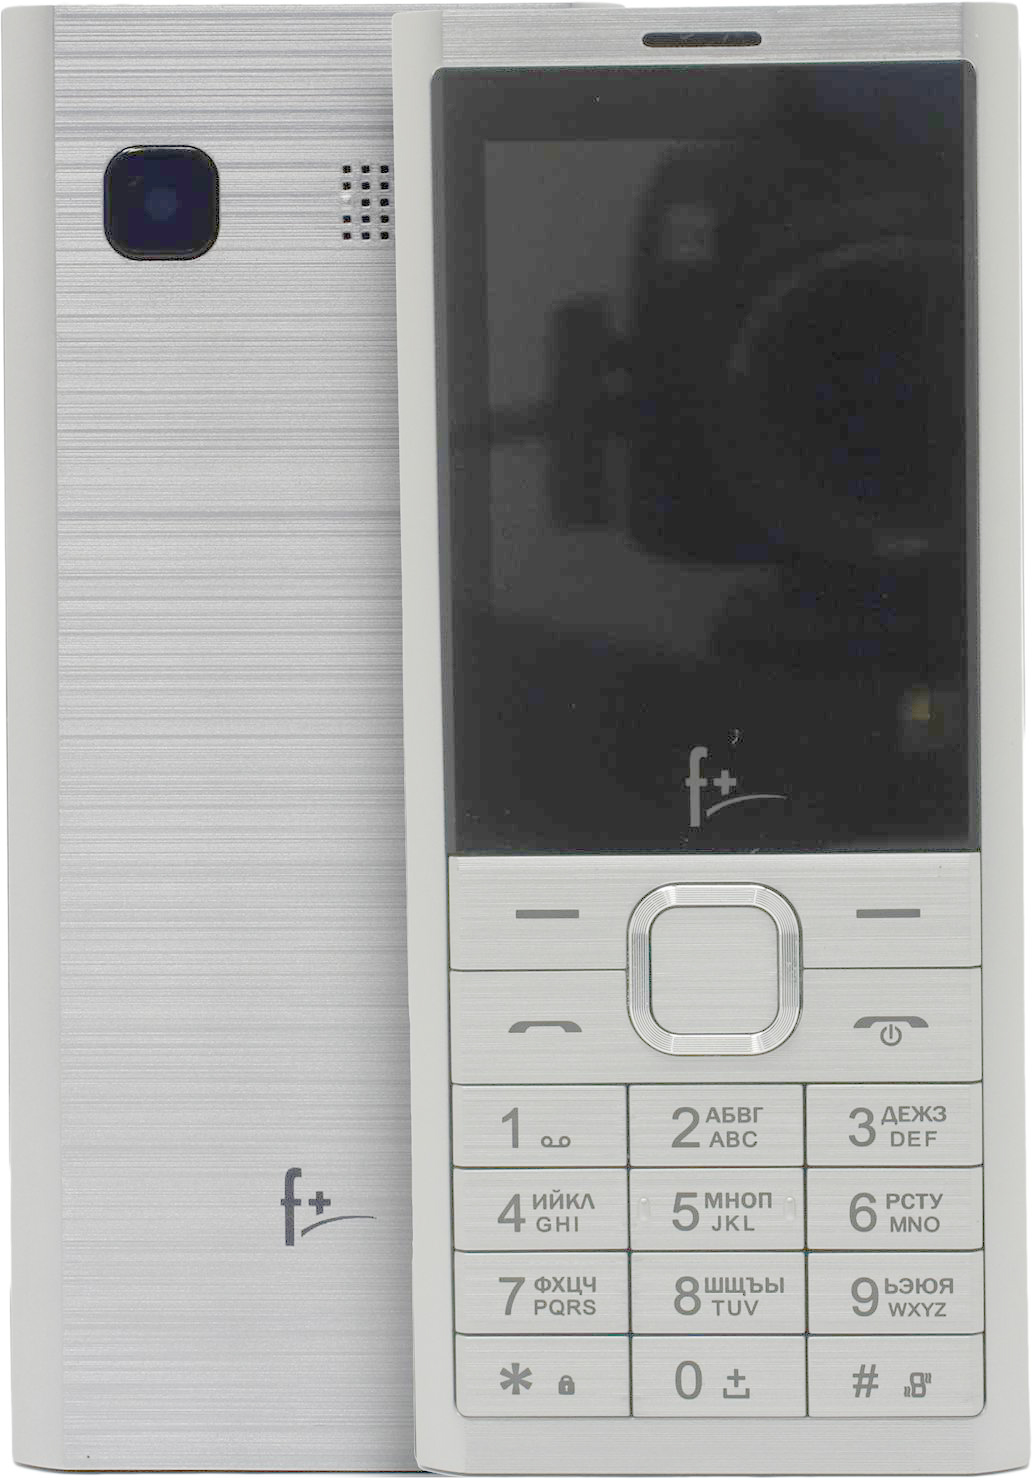 Мобильные телефон F+ B241 SILVER (2 SIM) мобильный телефон f b241 silver